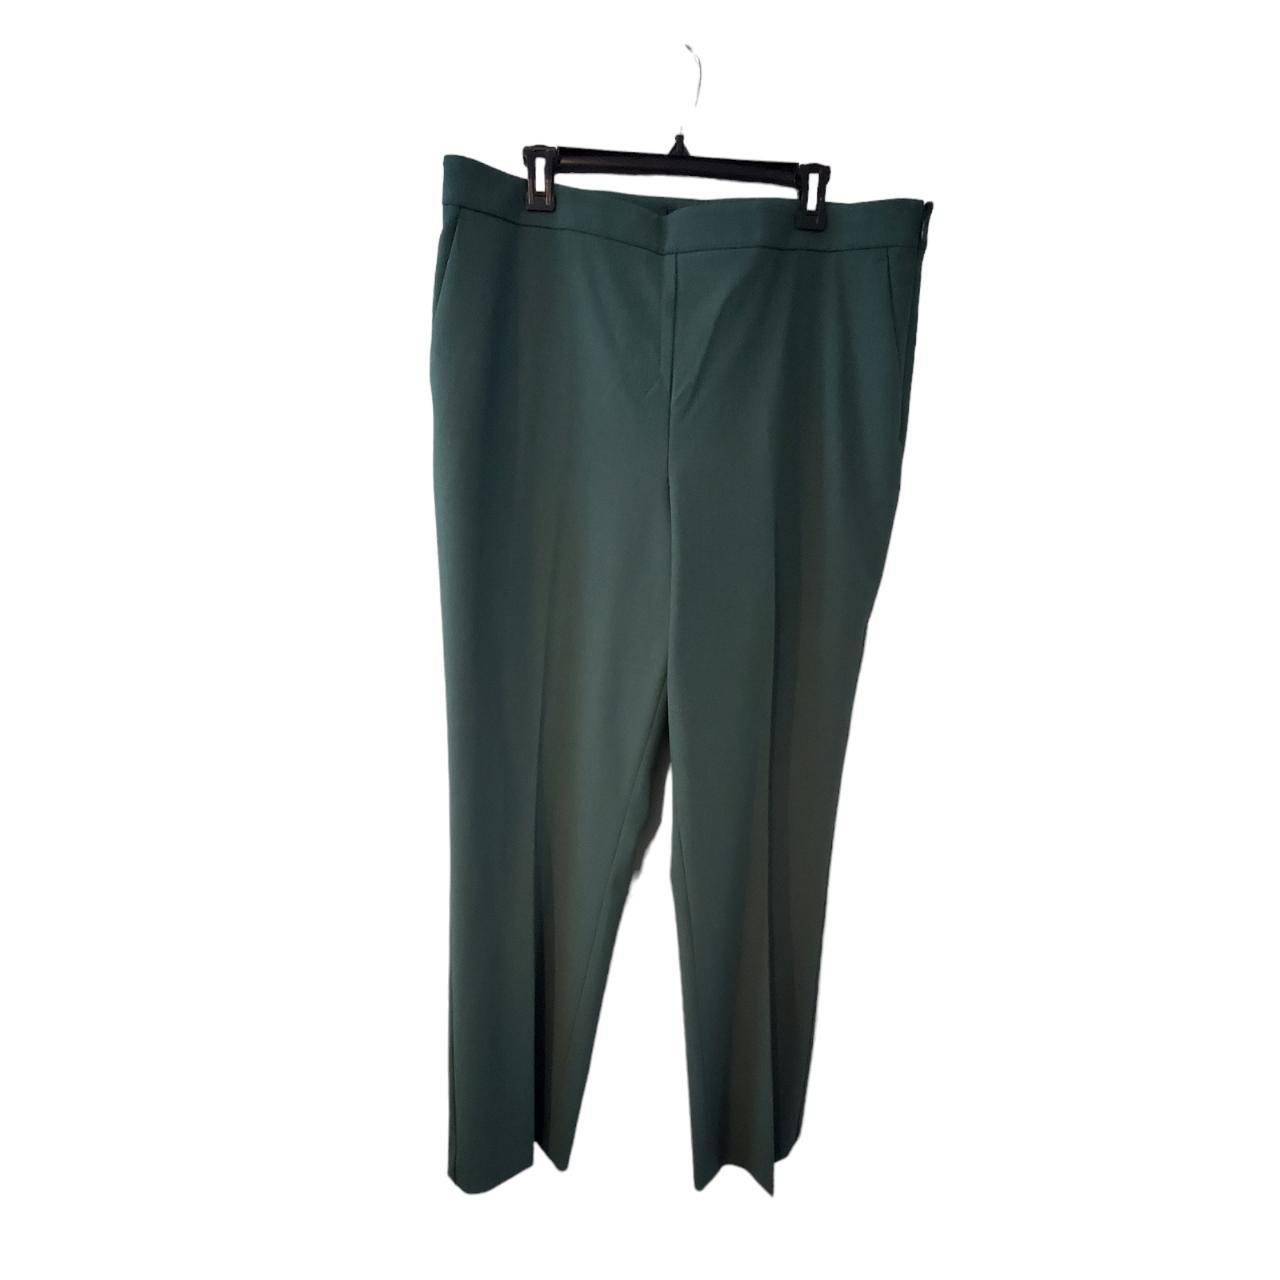 Ann Taylor LOFT Trousers Pants in Tie Waist in Marisa Fit Size 4P, 10, 12  Navy | eBay